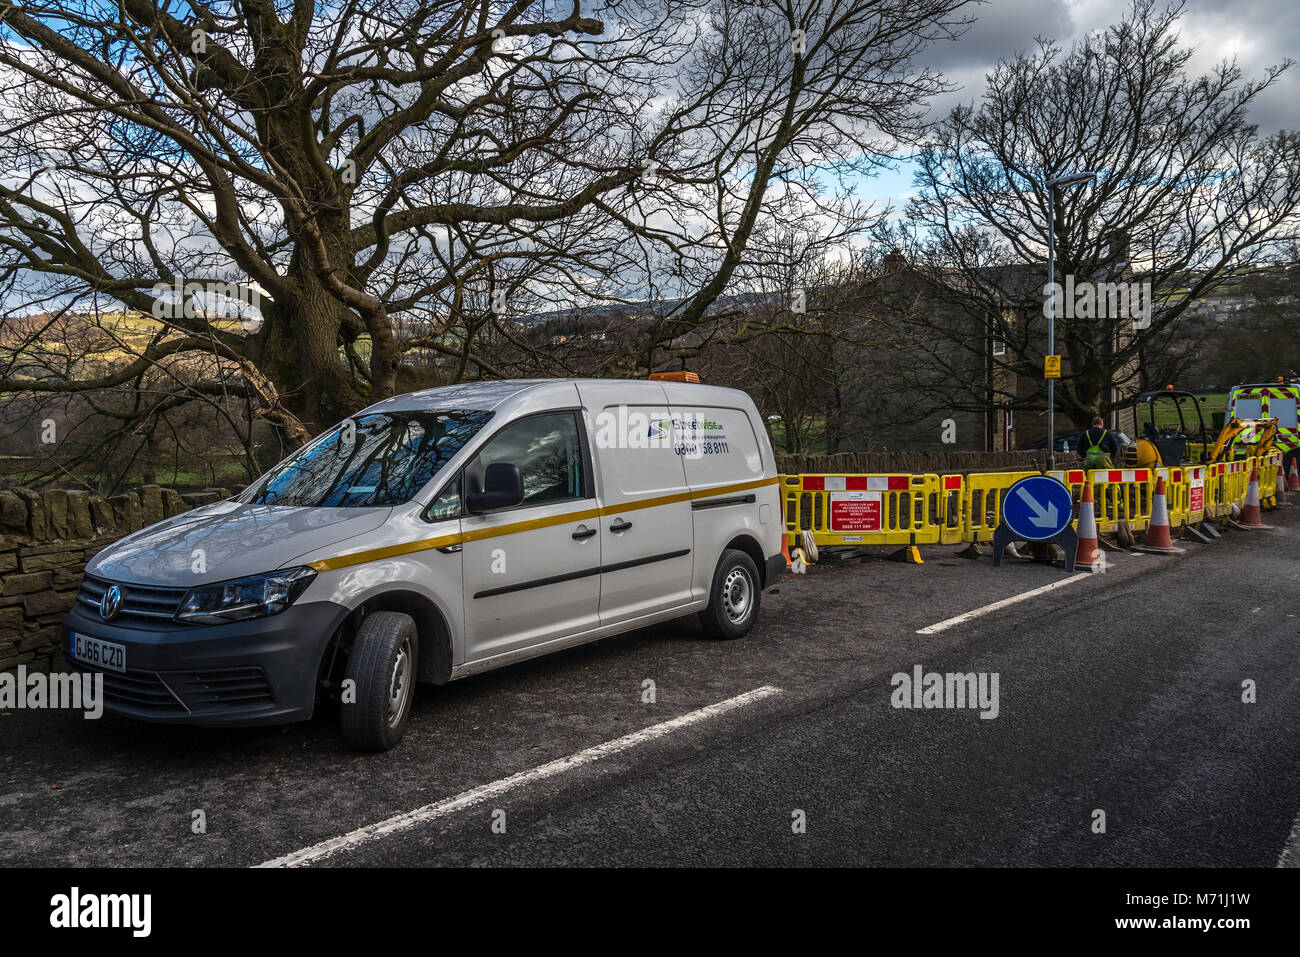 Opere Van avanti toNew tubazioni di gas essendo prevista sulla Strada Nuova, Holmfirth, con un No Smoking segno accanto alle opere stradali. Inghilterra, Regno Unito. Foto Stock